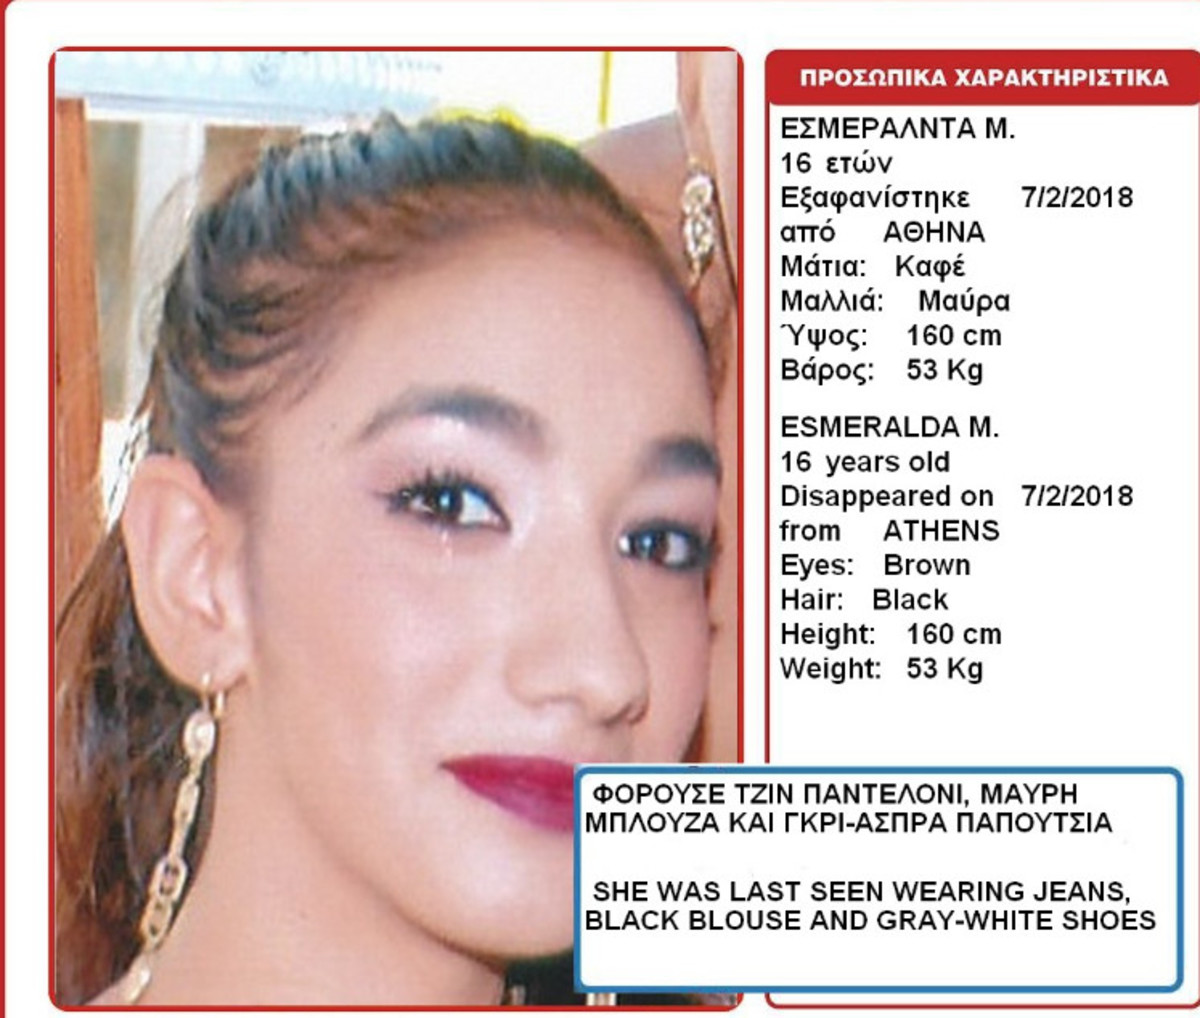 Συναγερμός – Εξαφανίστηκε 16χρονη στην Αθήνα – Χάθηκε ενώ ήταν στο σπίτι της! | Newsit.gr